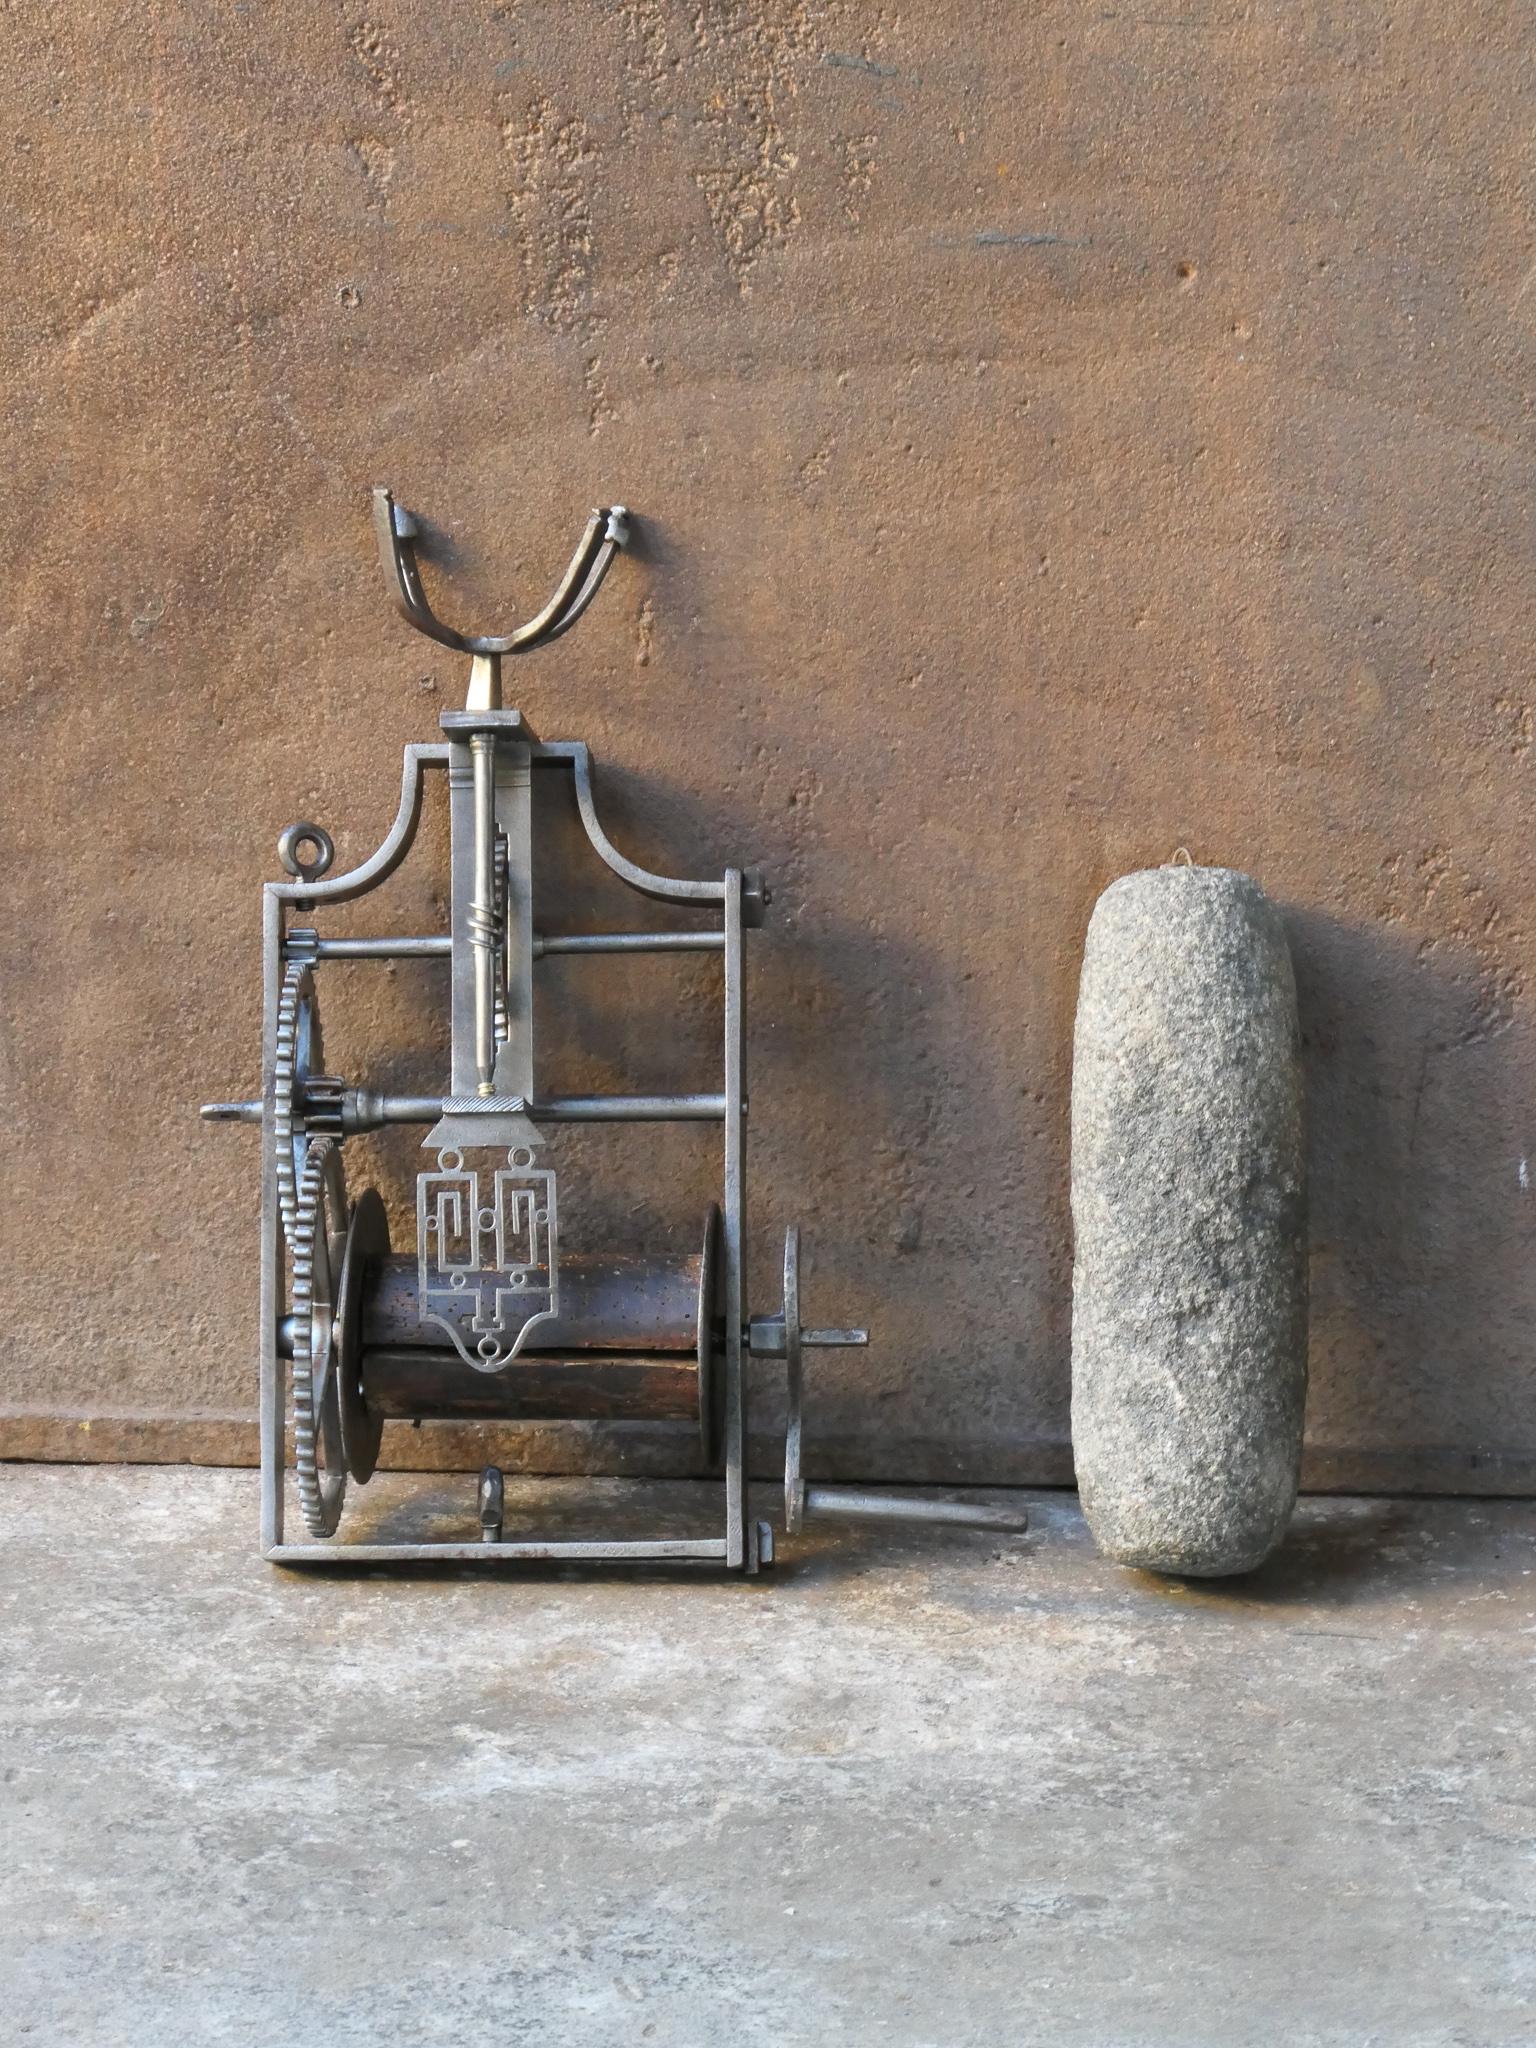 Vérin à broche à poids fonctionnel du XVIIIe siècle français Napoléon III en fer forgé, en bois et en pierre. Il était utilisé pour la cuisson dans la cheminée de la cuisine. Il manque cependant une corde et une chaîne.







